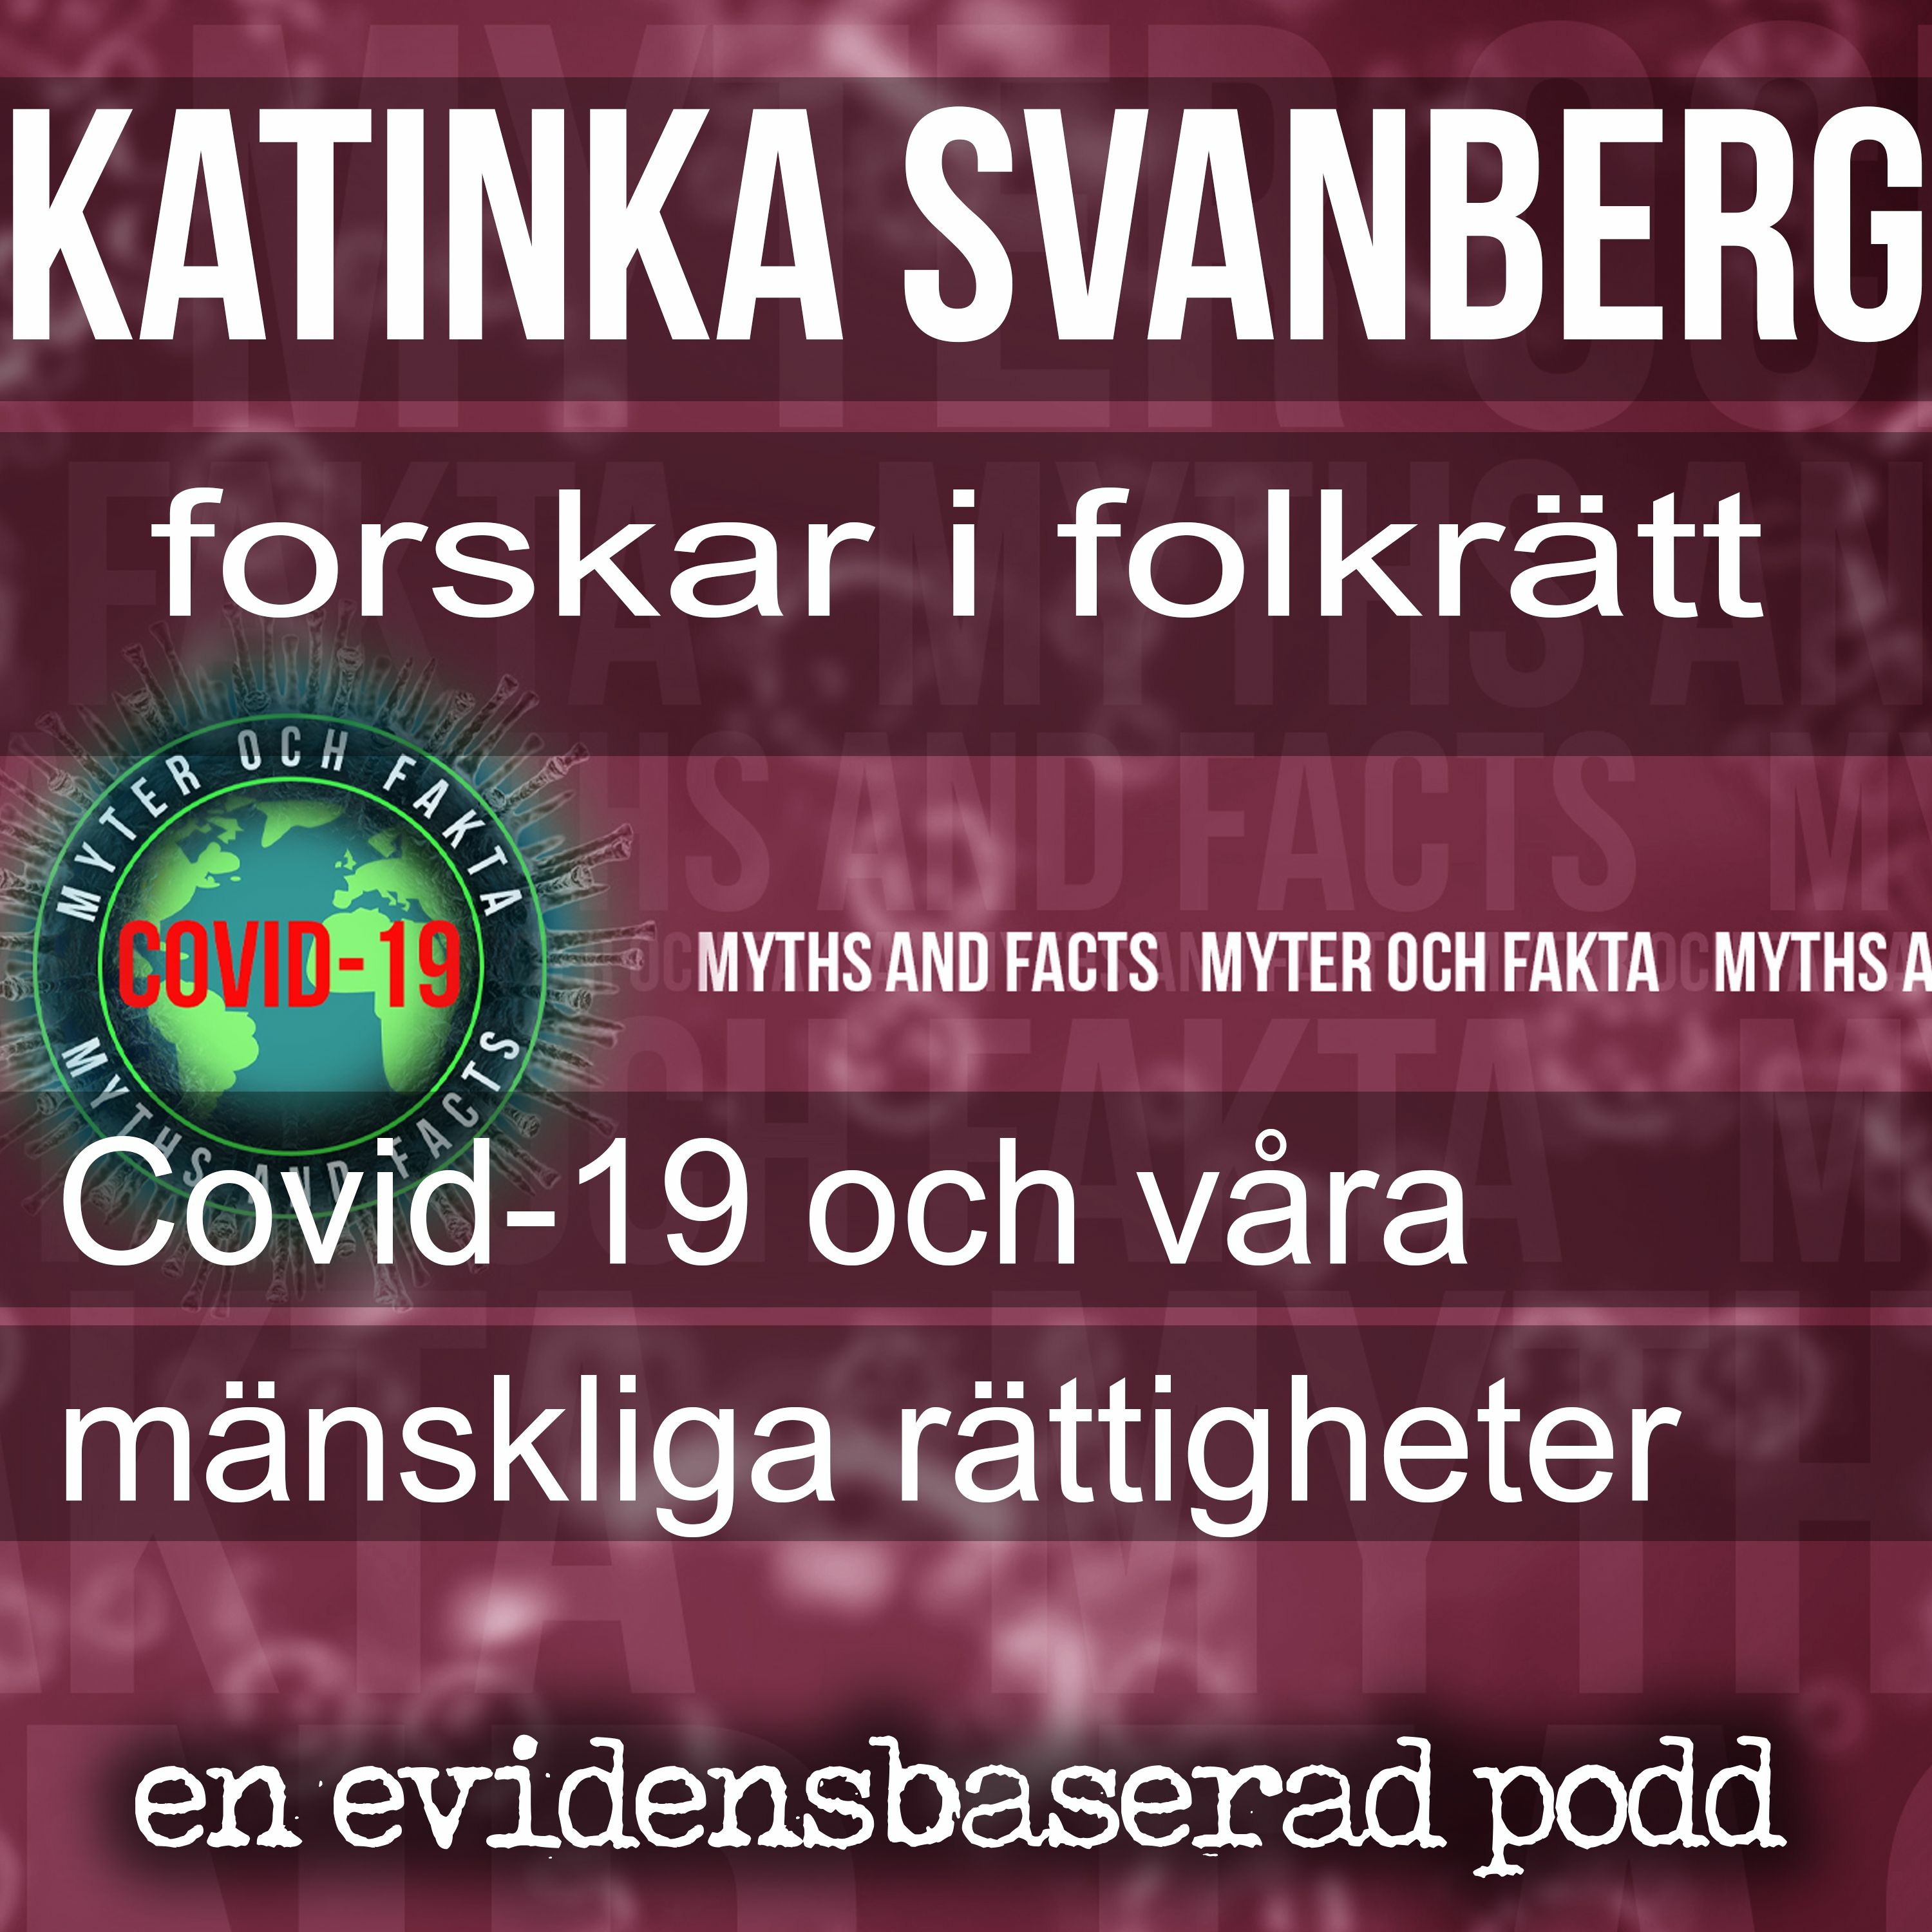 Covid-19 och mänskliga rättigheter med Katinka Svanberg